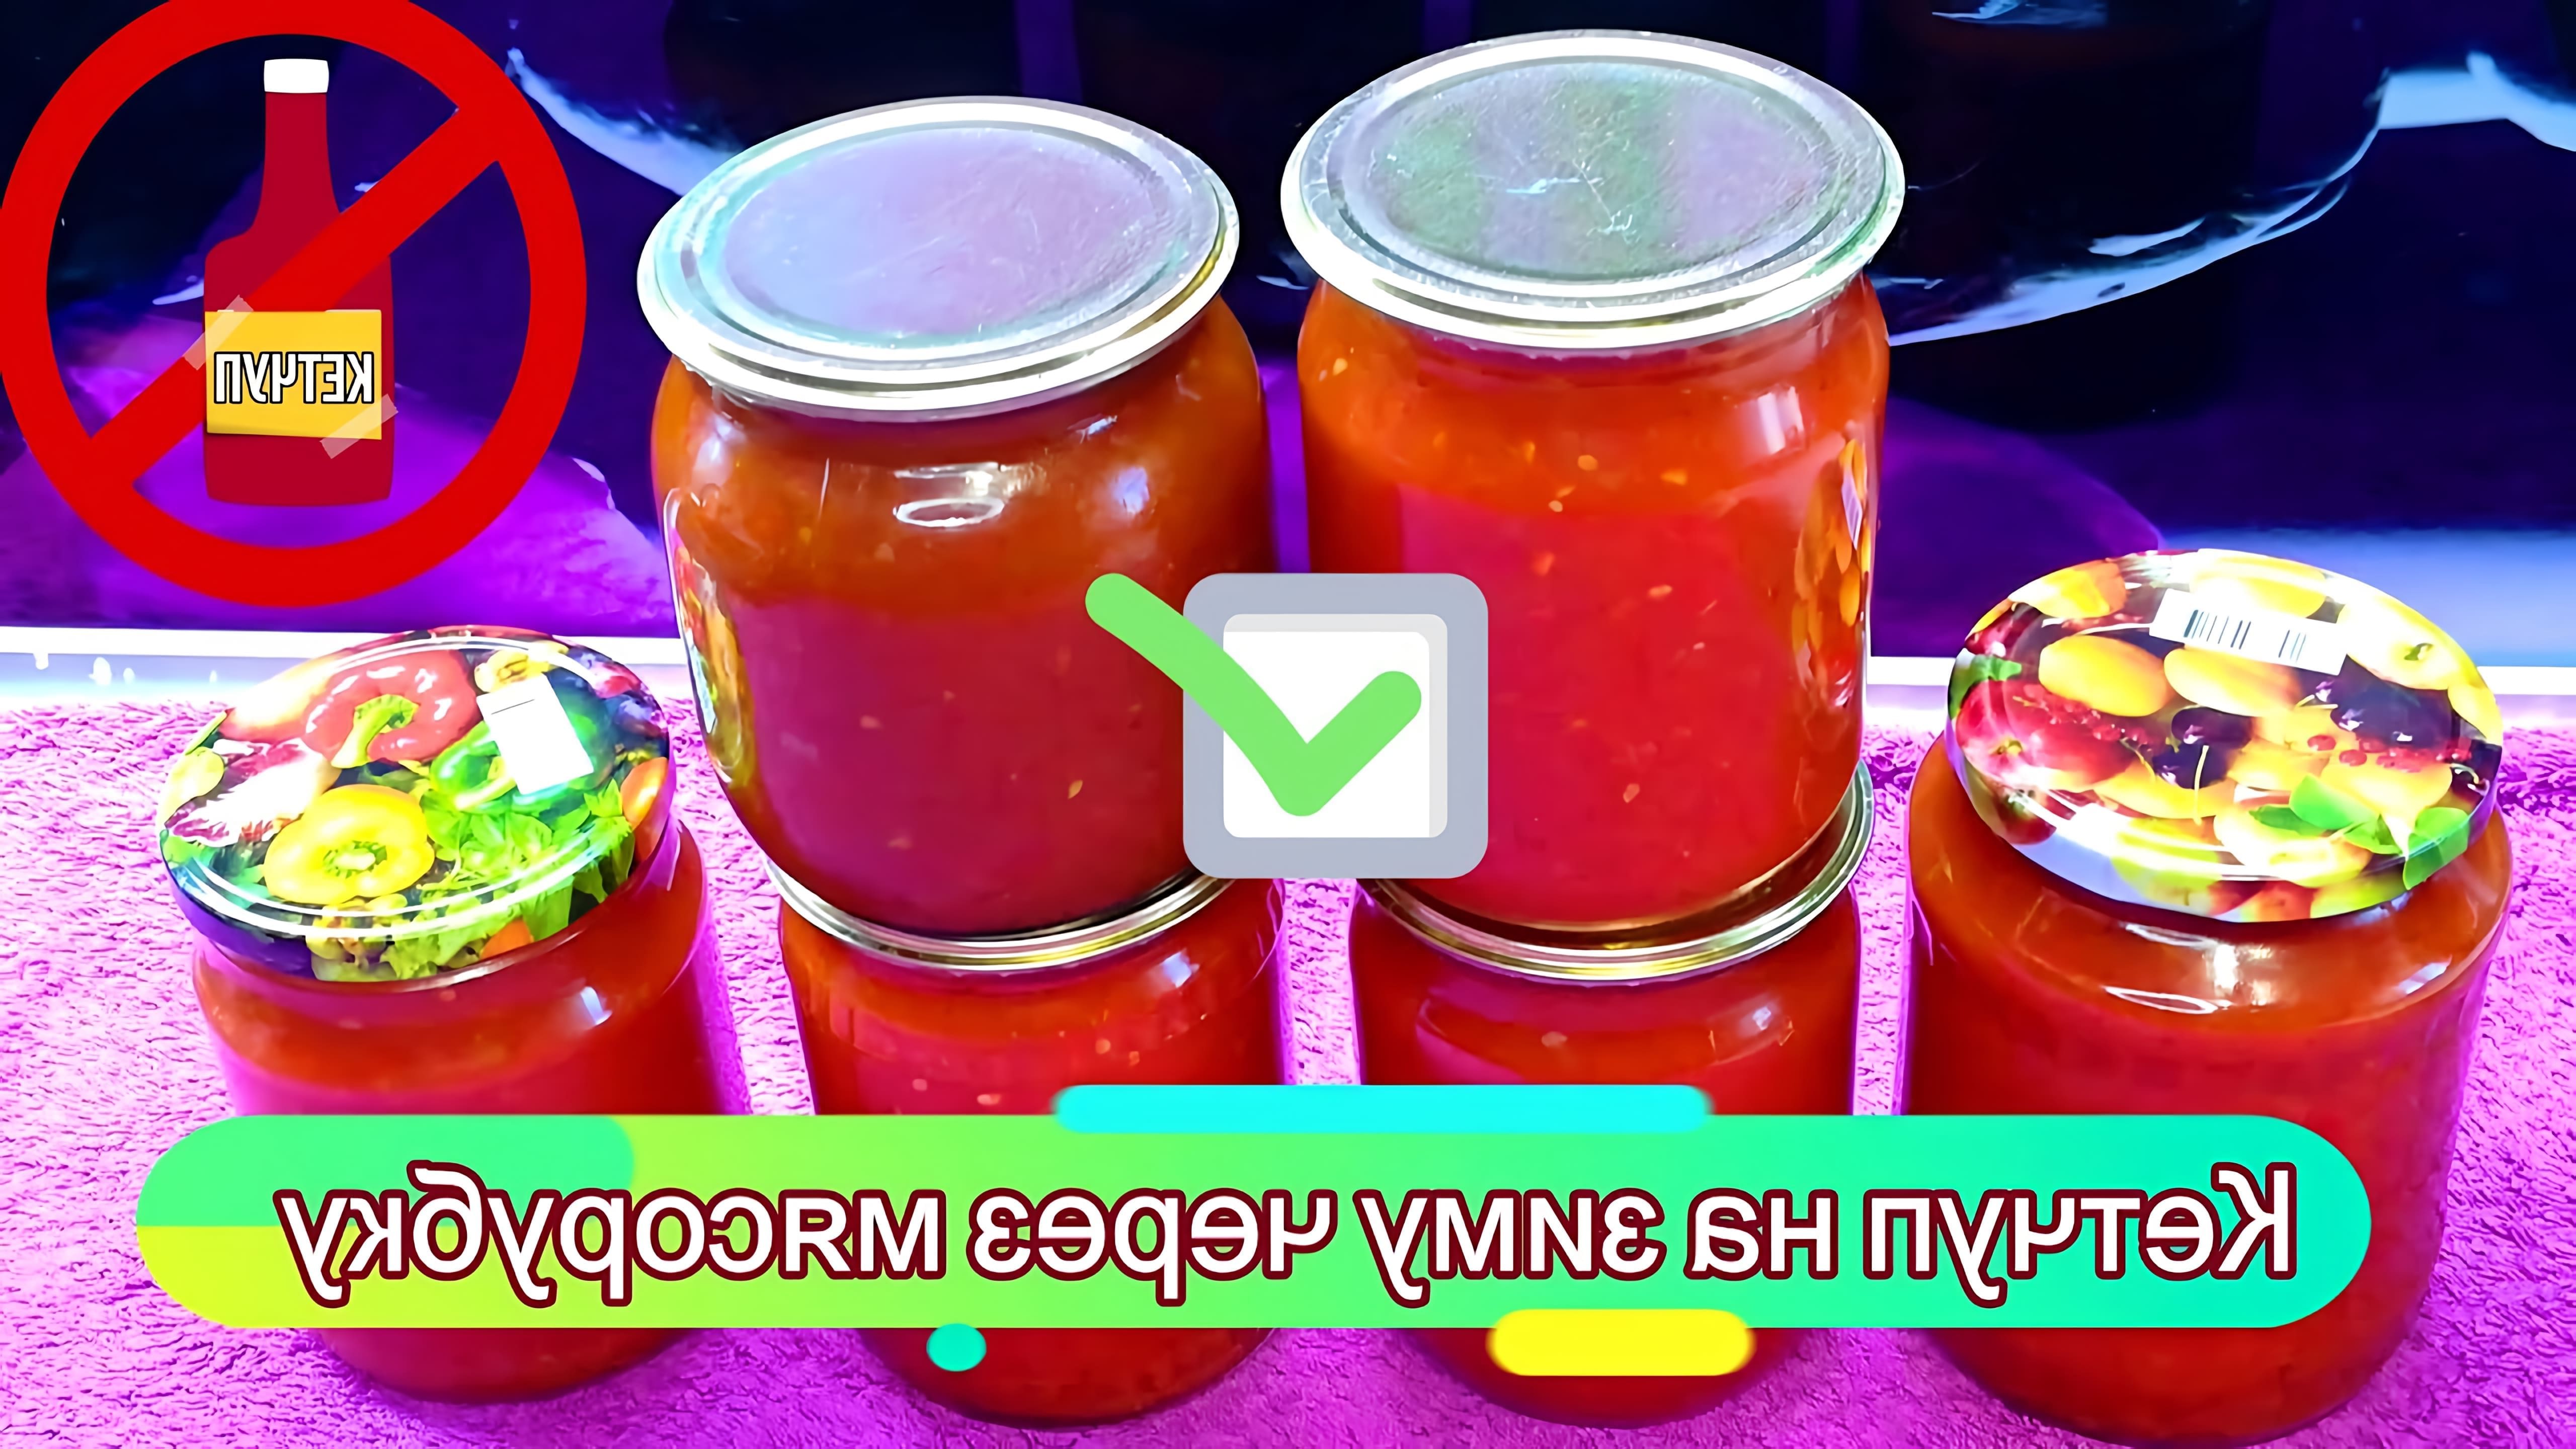 В данном видео демонстрируется процесс приготовления кетчупа на зиму через мясорубку из свежих помидор с базиликом и перцем